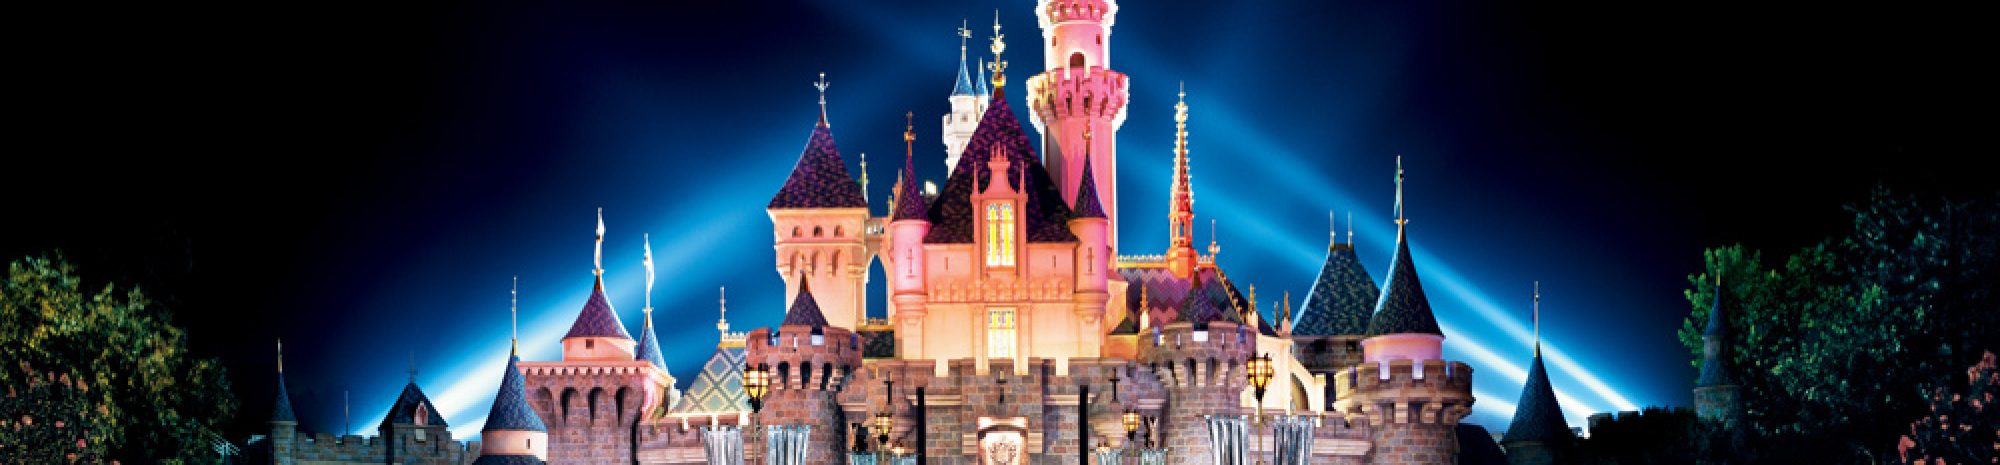 Disneyland célèbre son 60e anniversaire